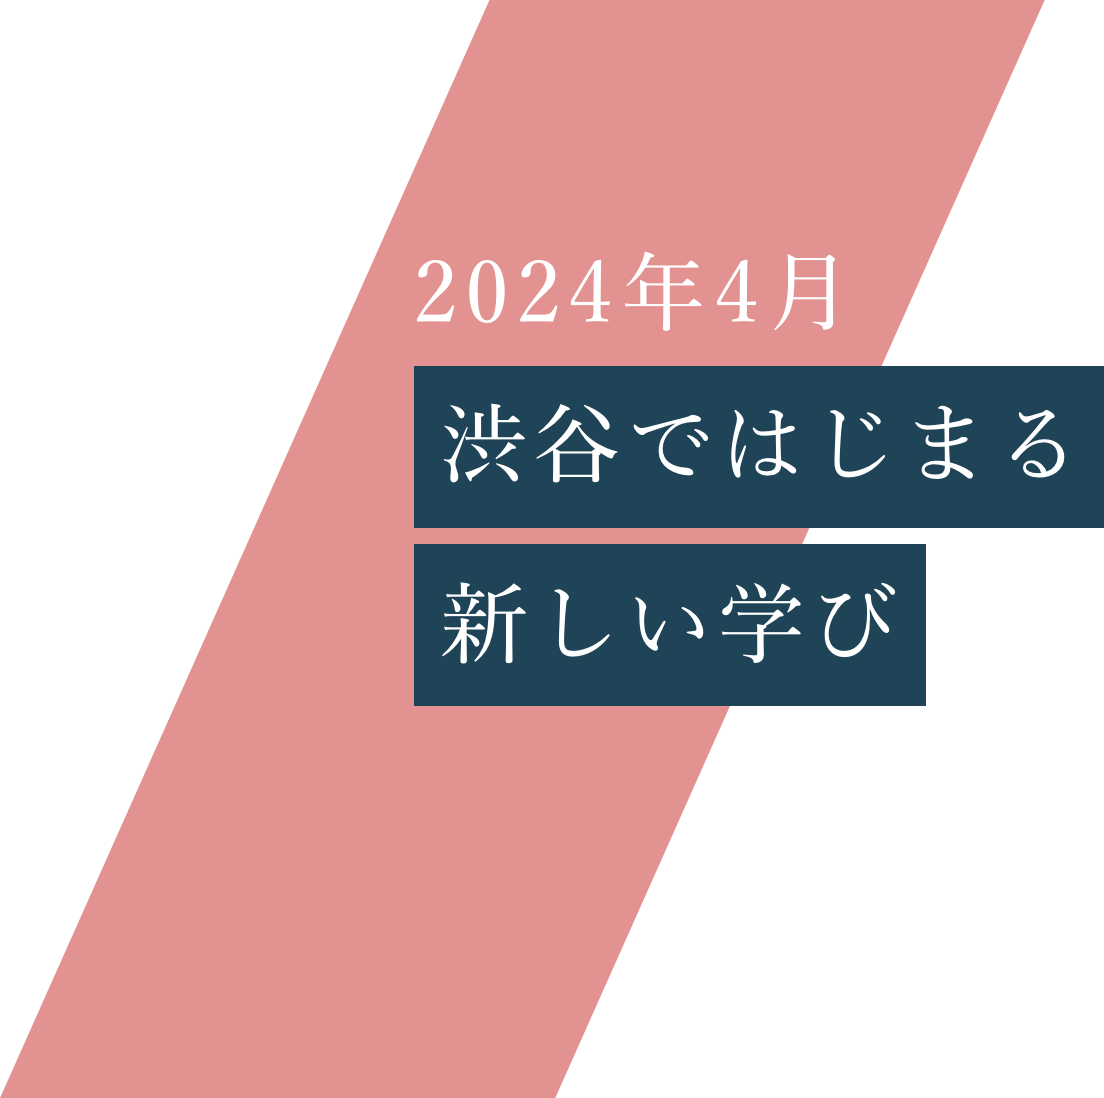 2024年4月 渋谷ではじまる3つの学科。